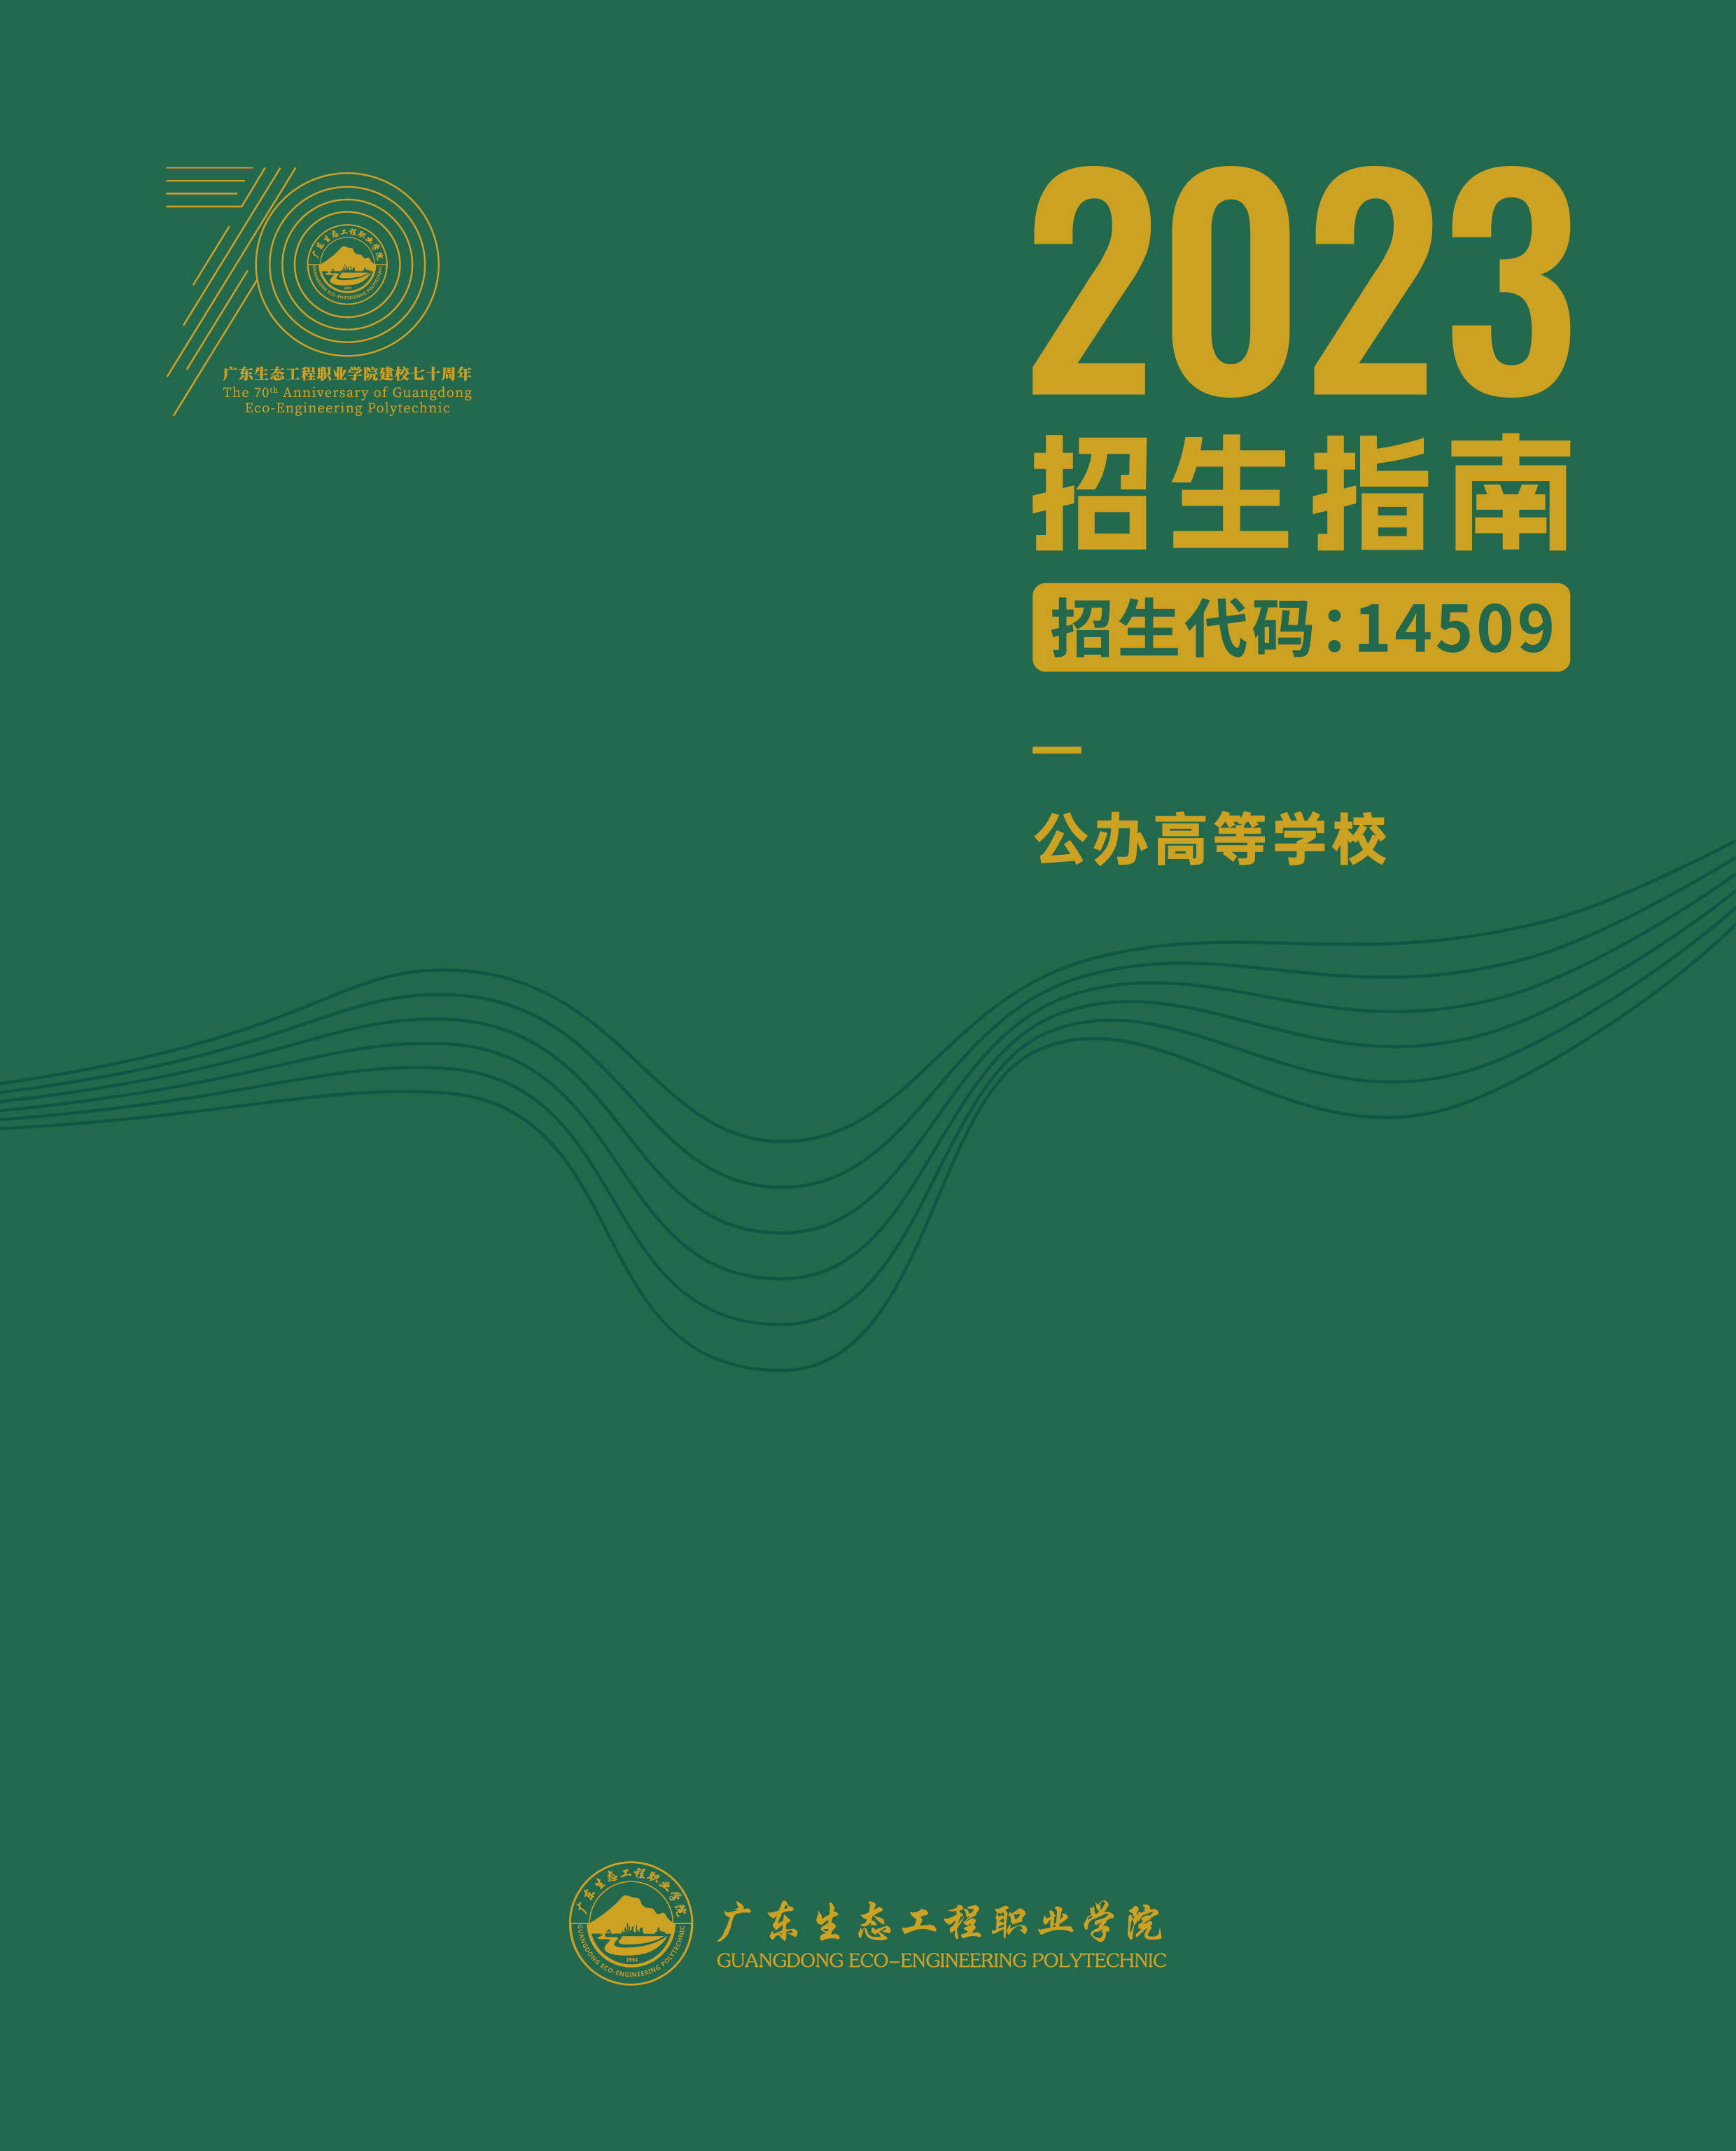 广东生态工程职业学院2023年招生指南